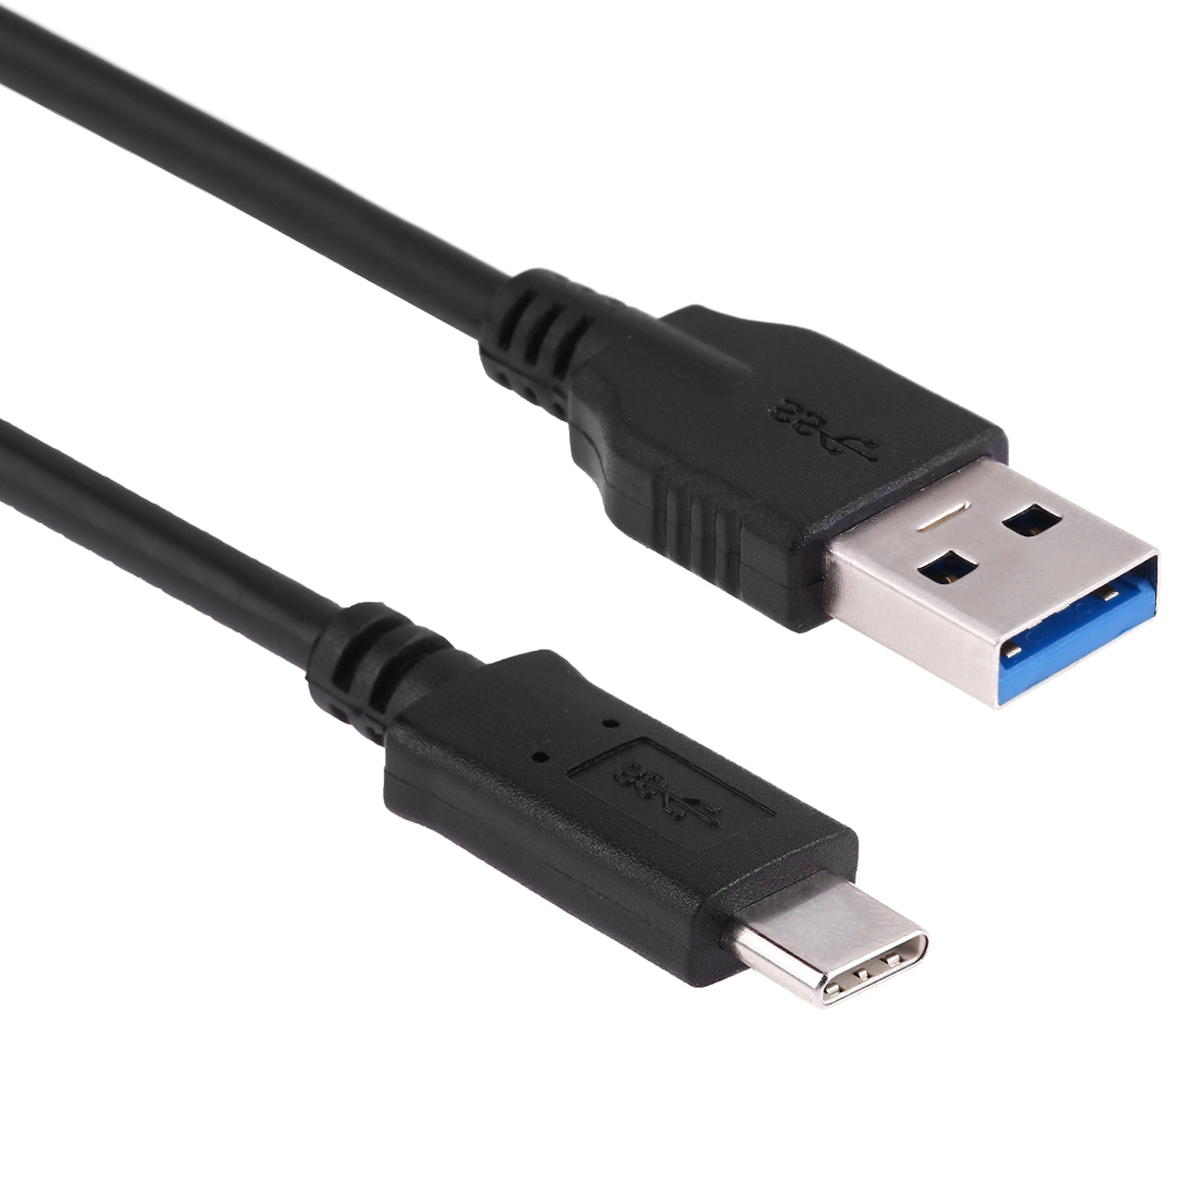 UC-312 USB 3.1 C/M - USB 3.0 A/M, černý, 3m, USB C-USB A kabel